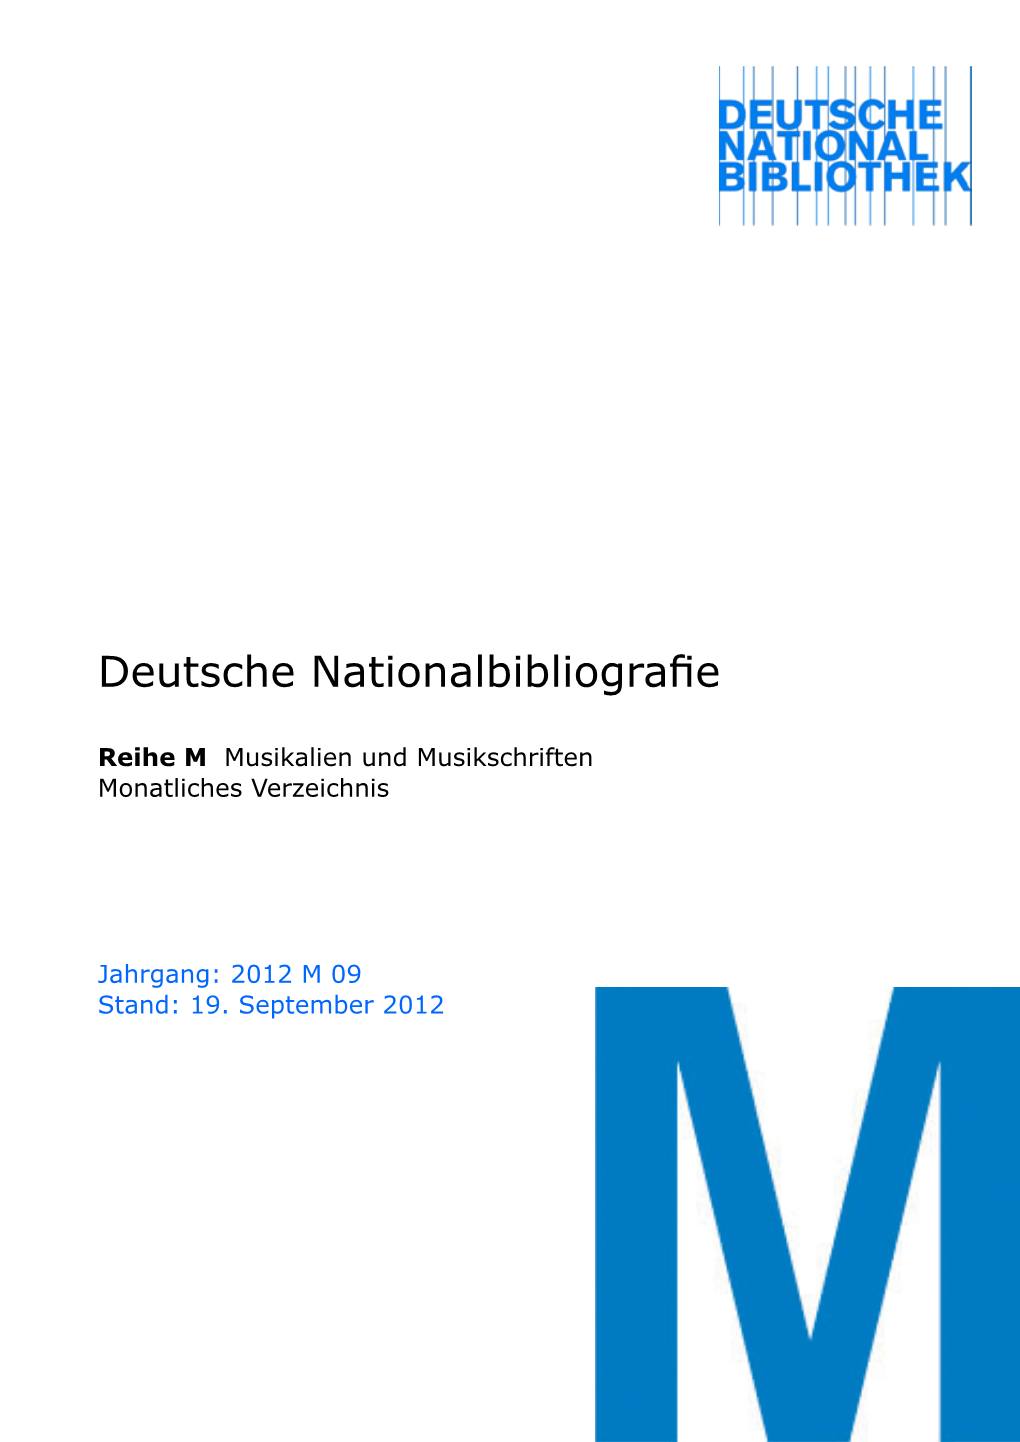 Deutsche Nationalbibliografie 2012 M 09